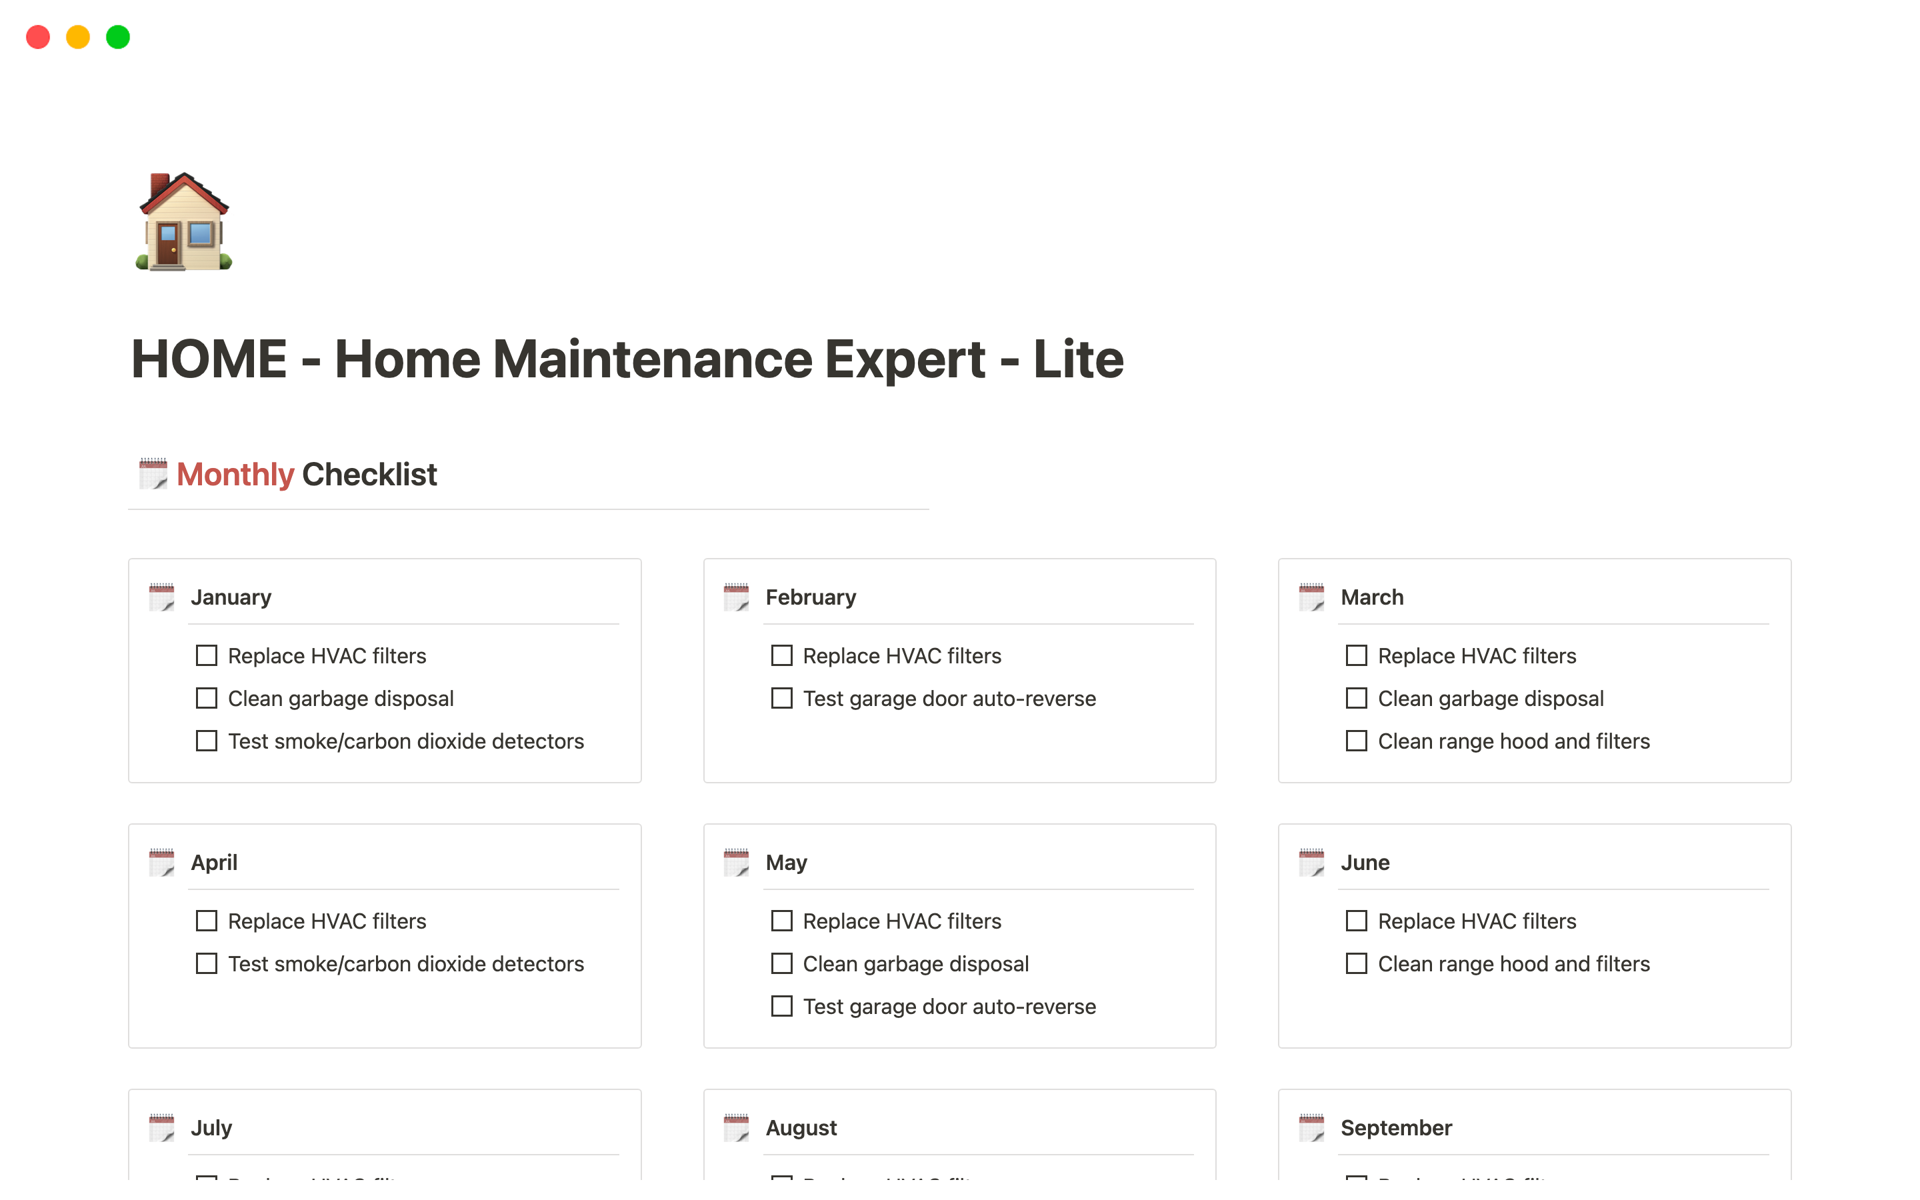 En förhandsgranskning av mallen för HOME - Home Maintenance Expert - Lite